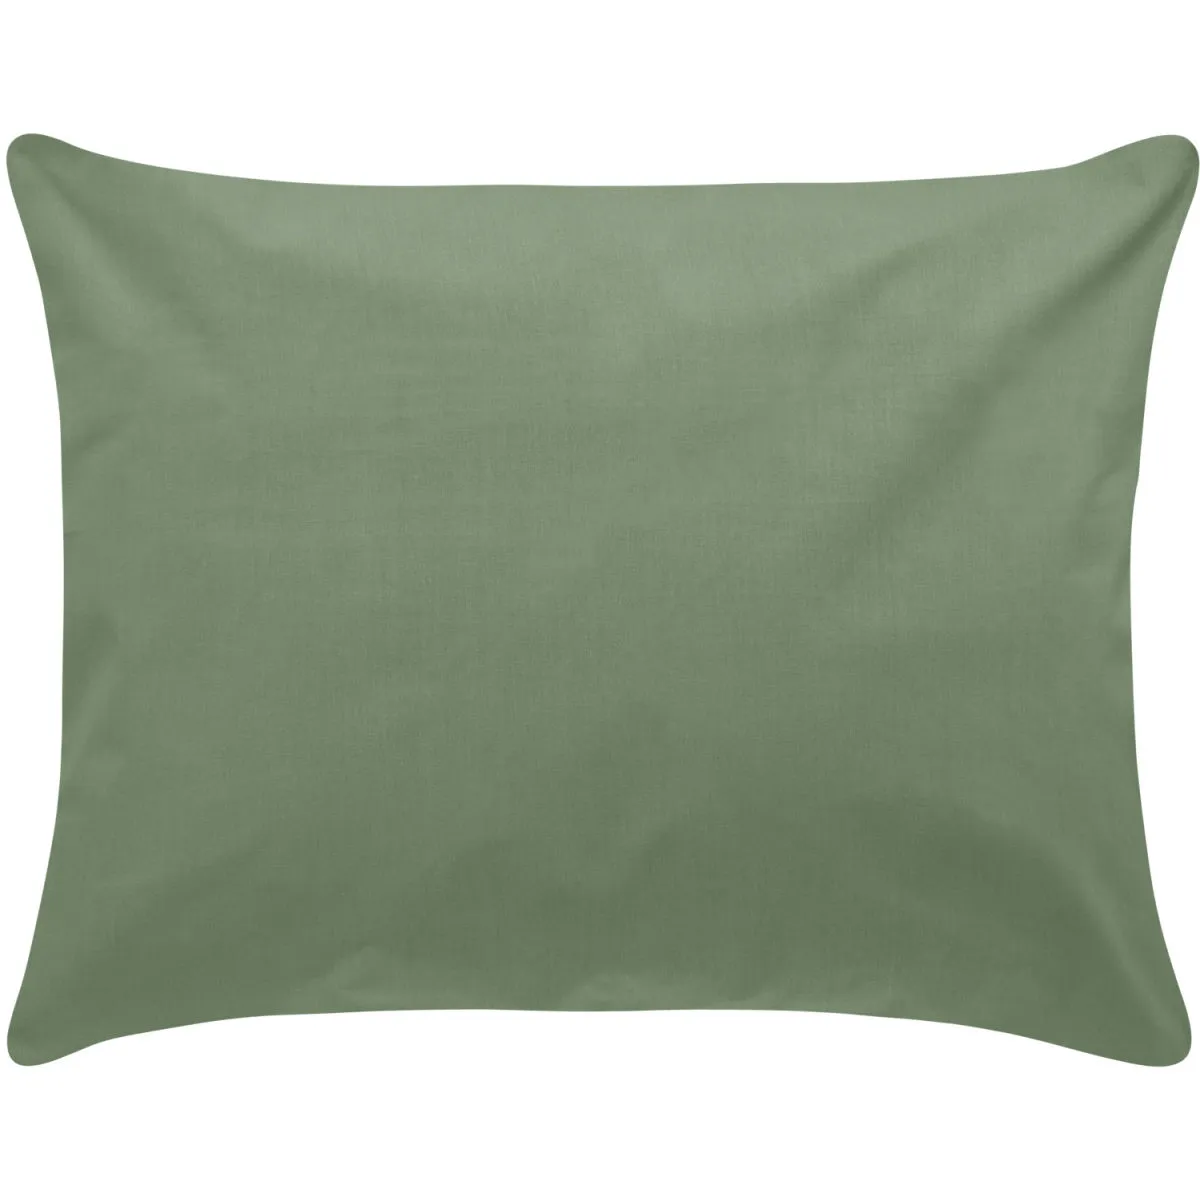 Federa cuscino Sienna chiusura a sacco ; 60x80 cm (LxL); cachi